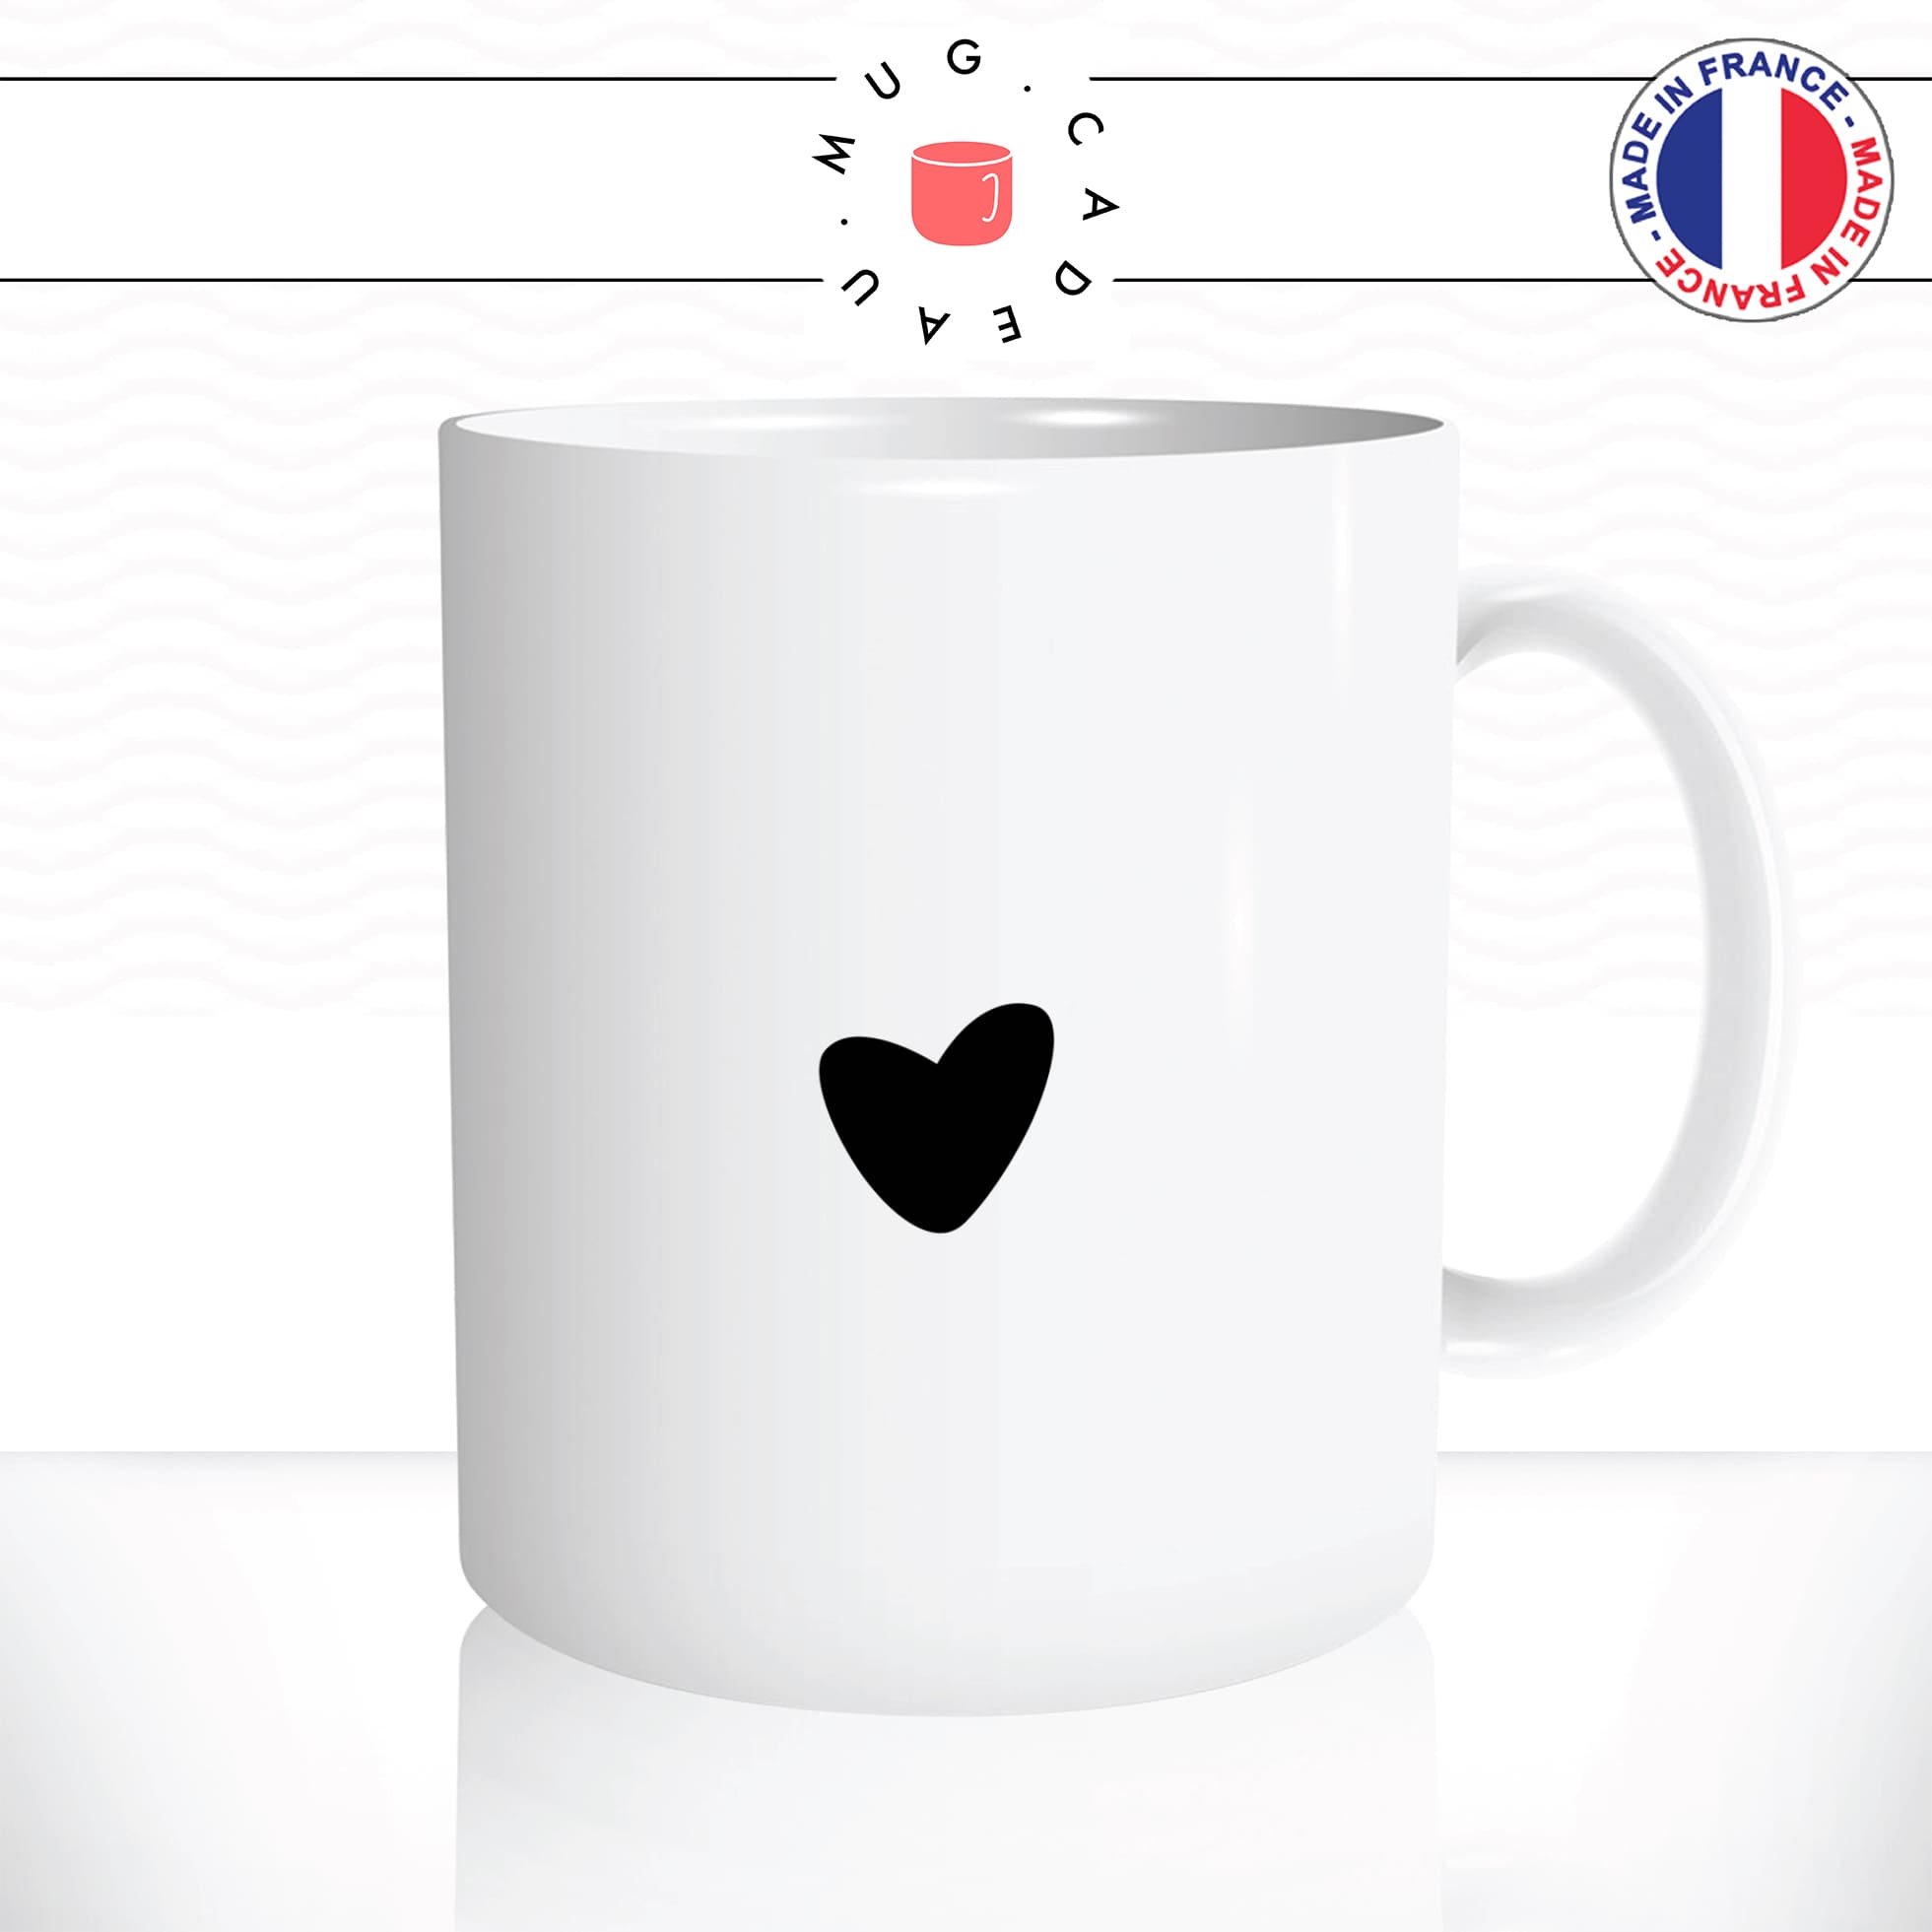 mug-tasse-blanche-votre-message-personnalisé-personnalisable-texte-unique-original-collegue-amie-mignon-amour-couple-idée-cadeau-fun2